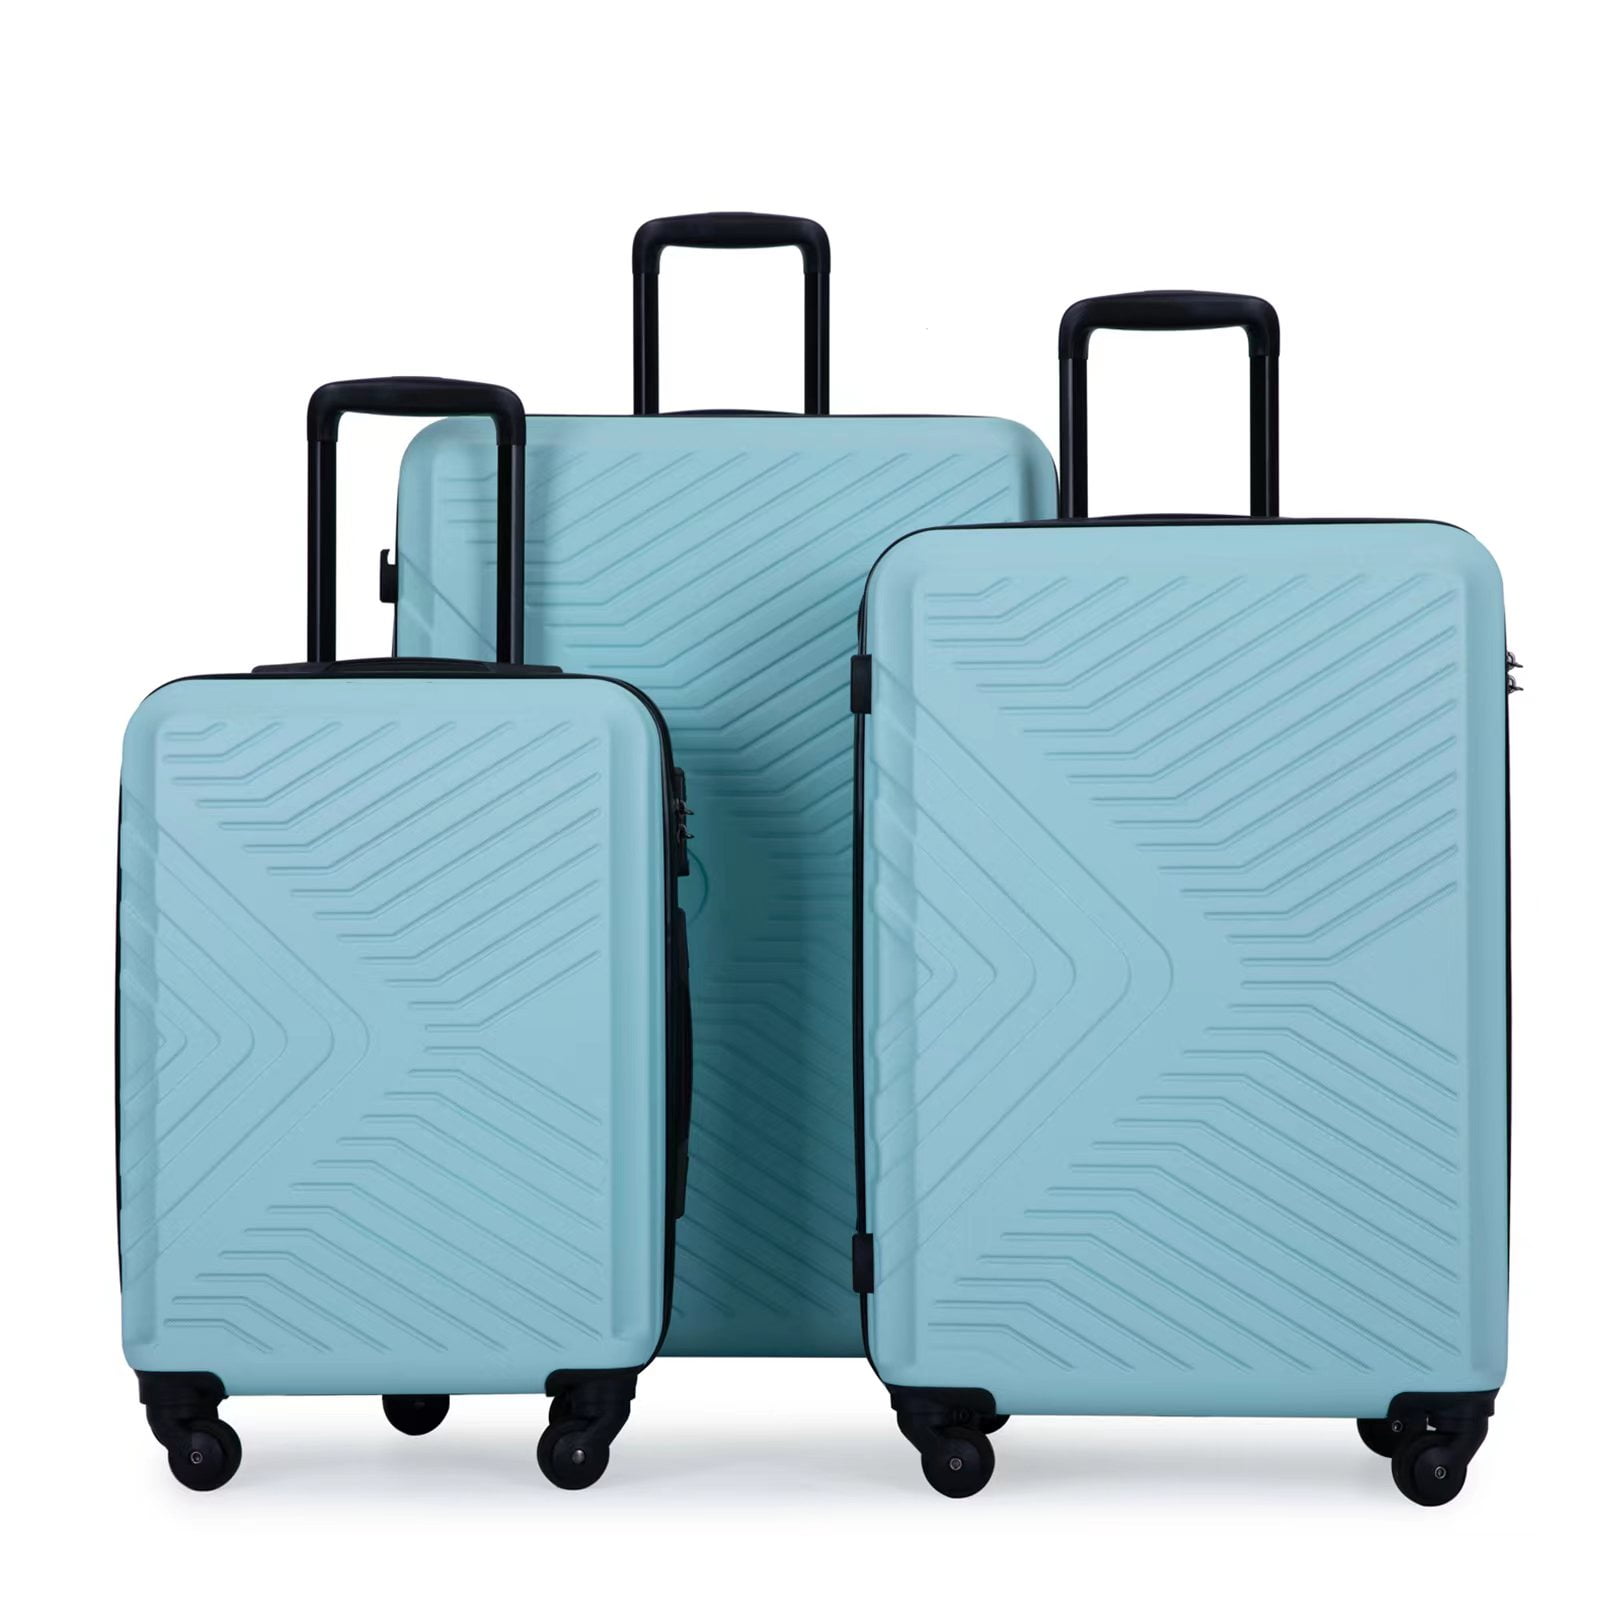 Travelhouse 3 Piece Luggage Set Hardshell Lightweight Suitcase with TSA ...